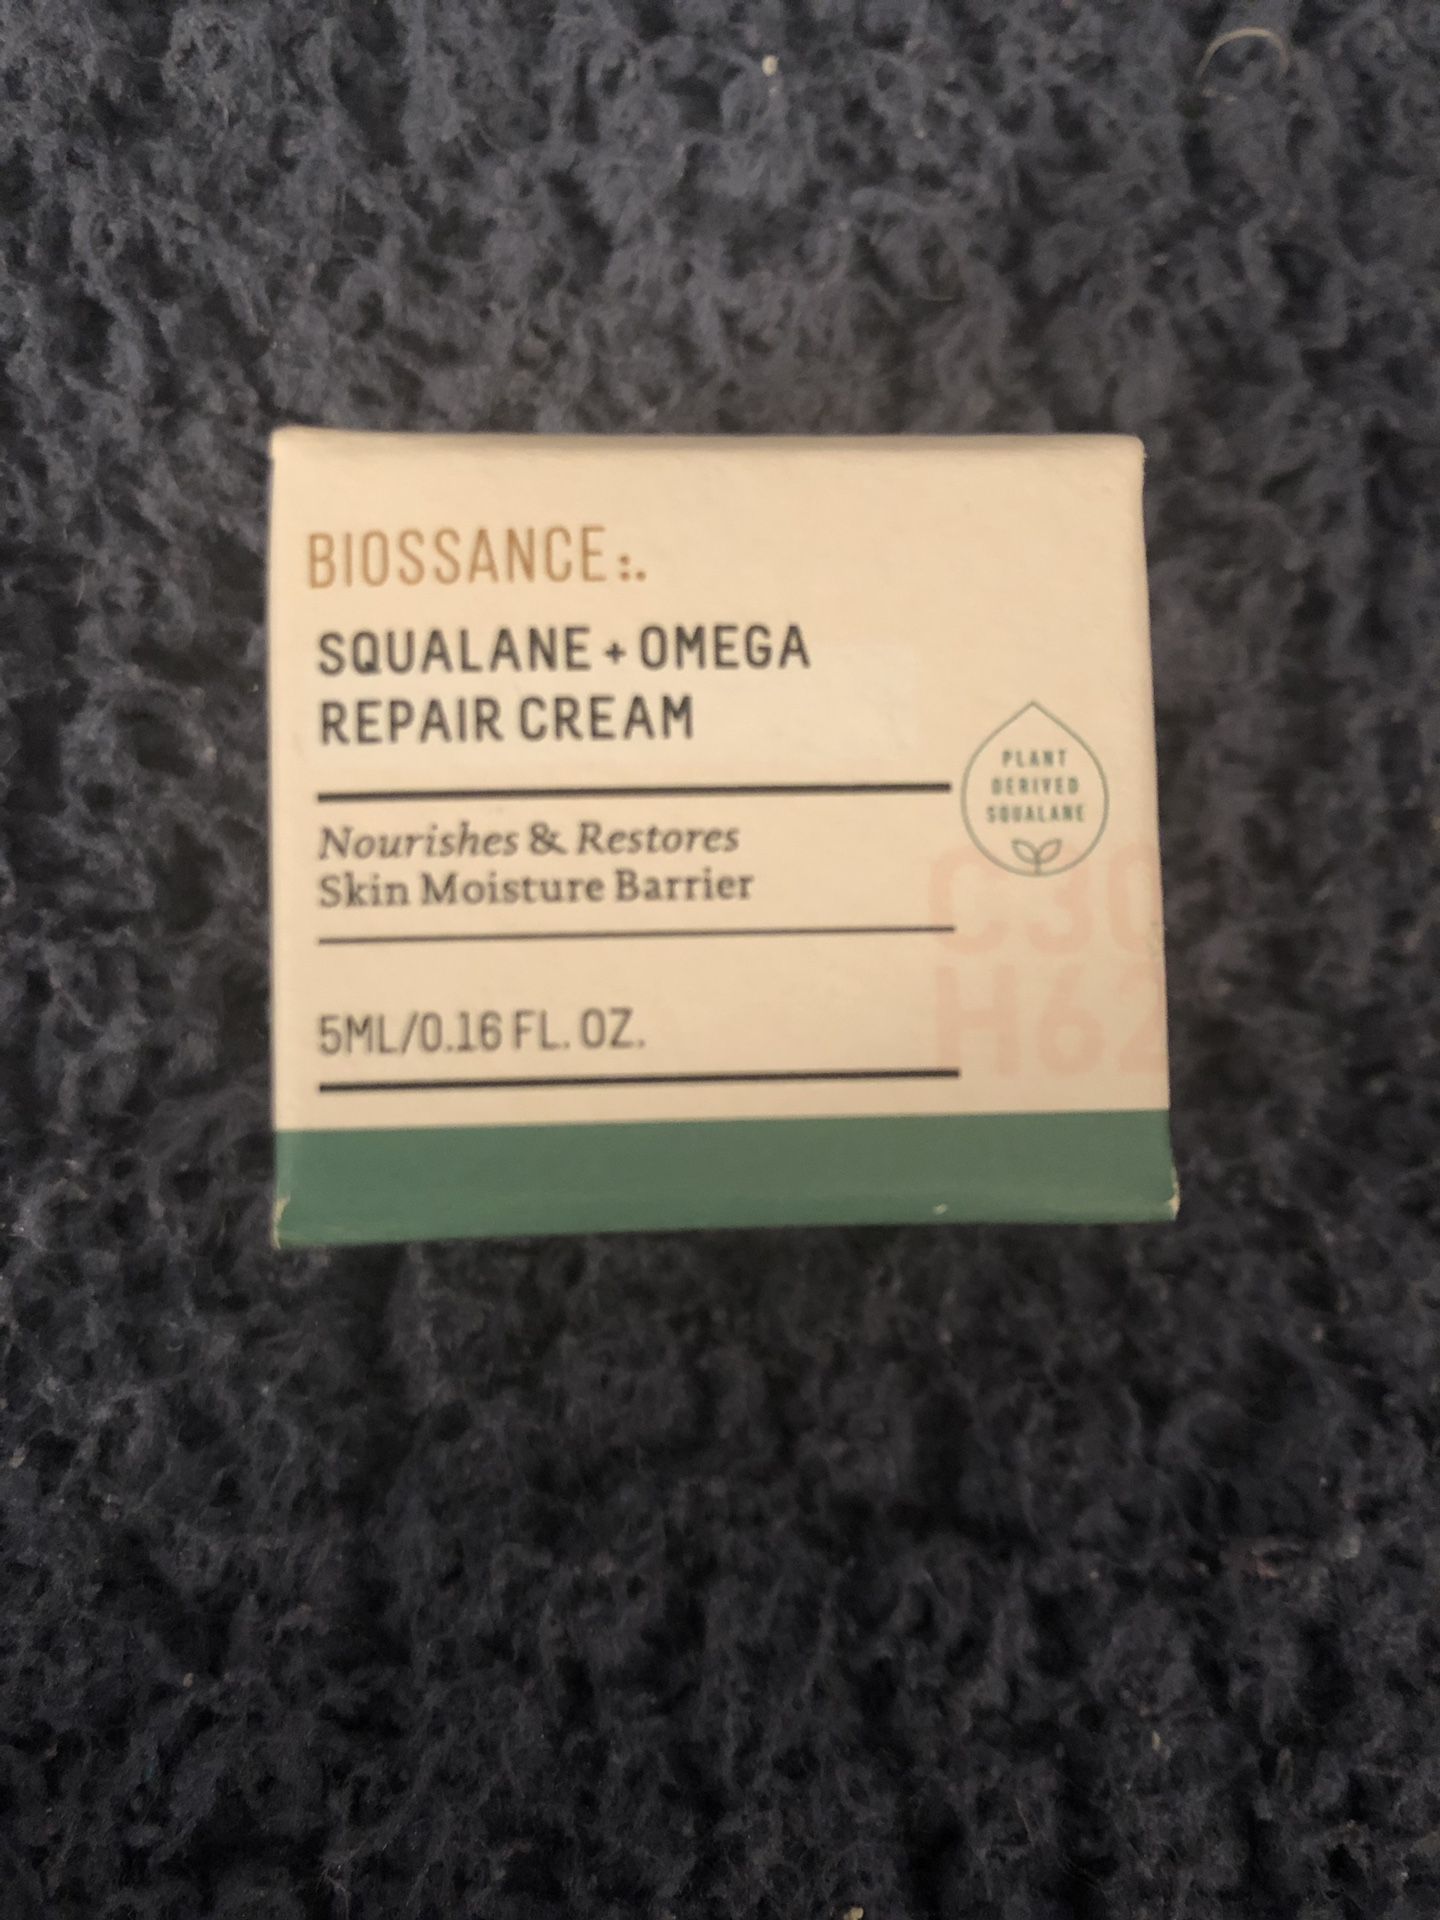 Biossance: Squalane & Omega Repair Cream